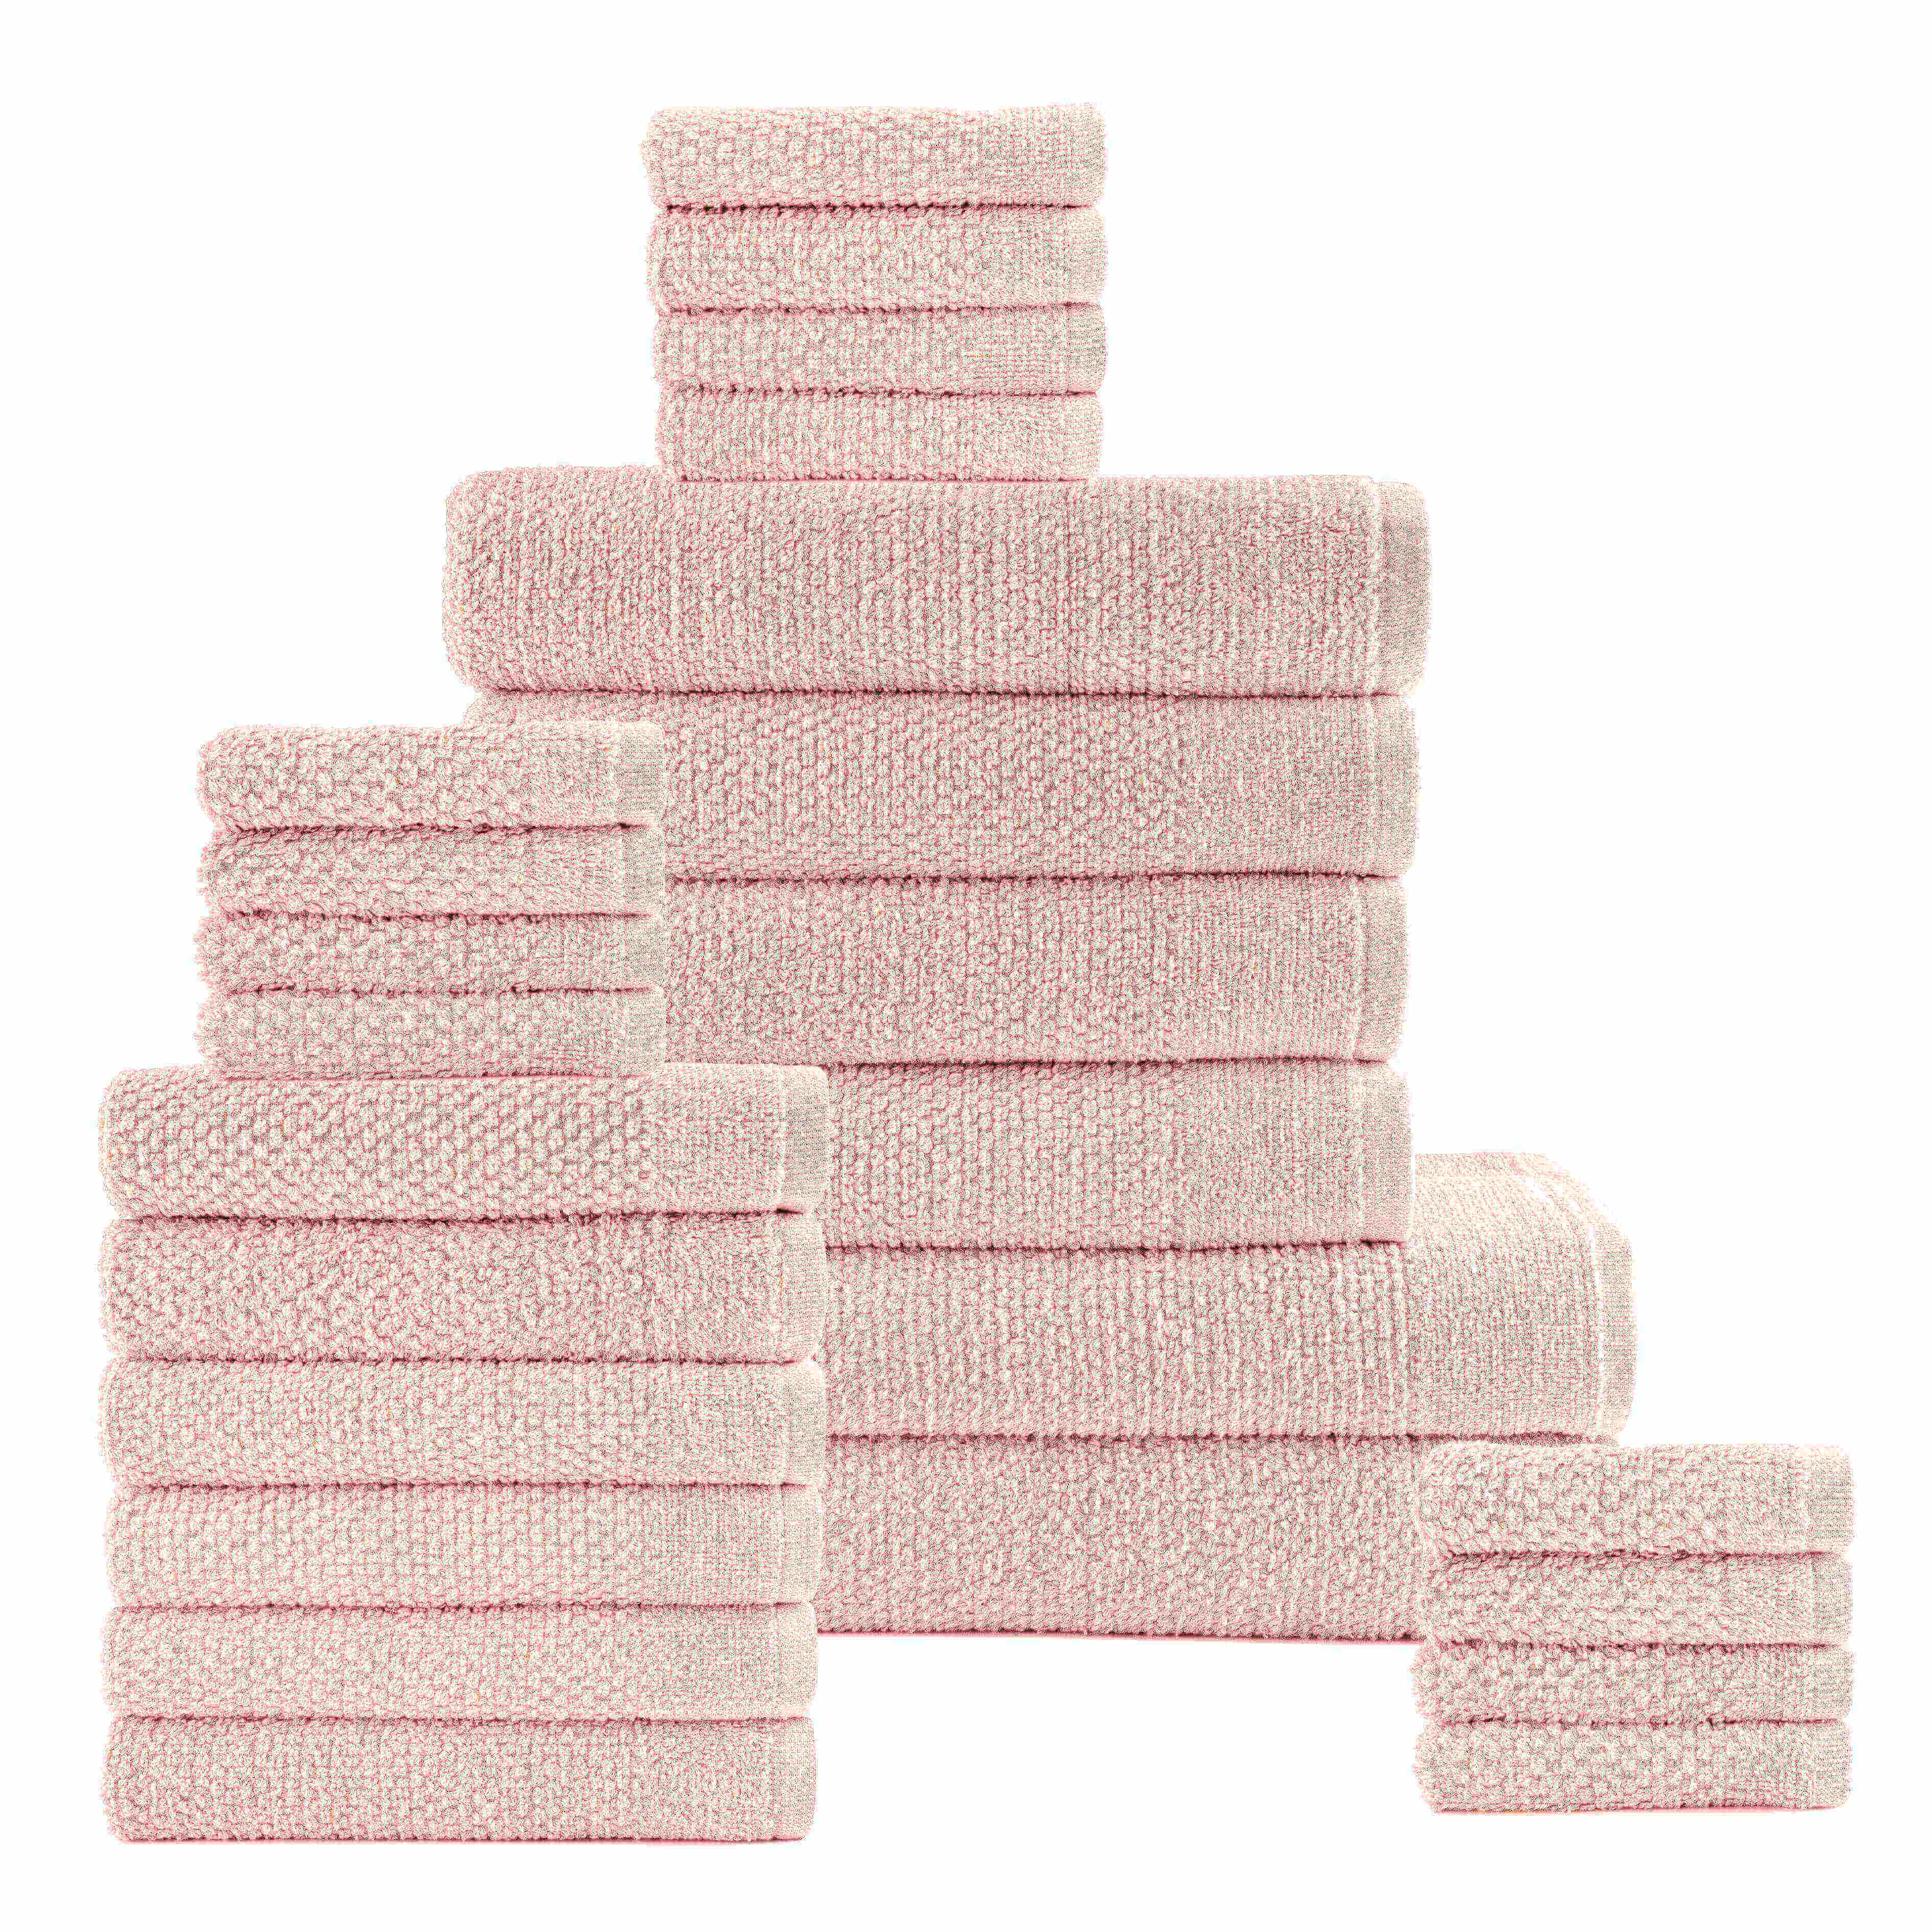 Pink Colour of 24 Piece Popcorn Cotton Bath Towel Set